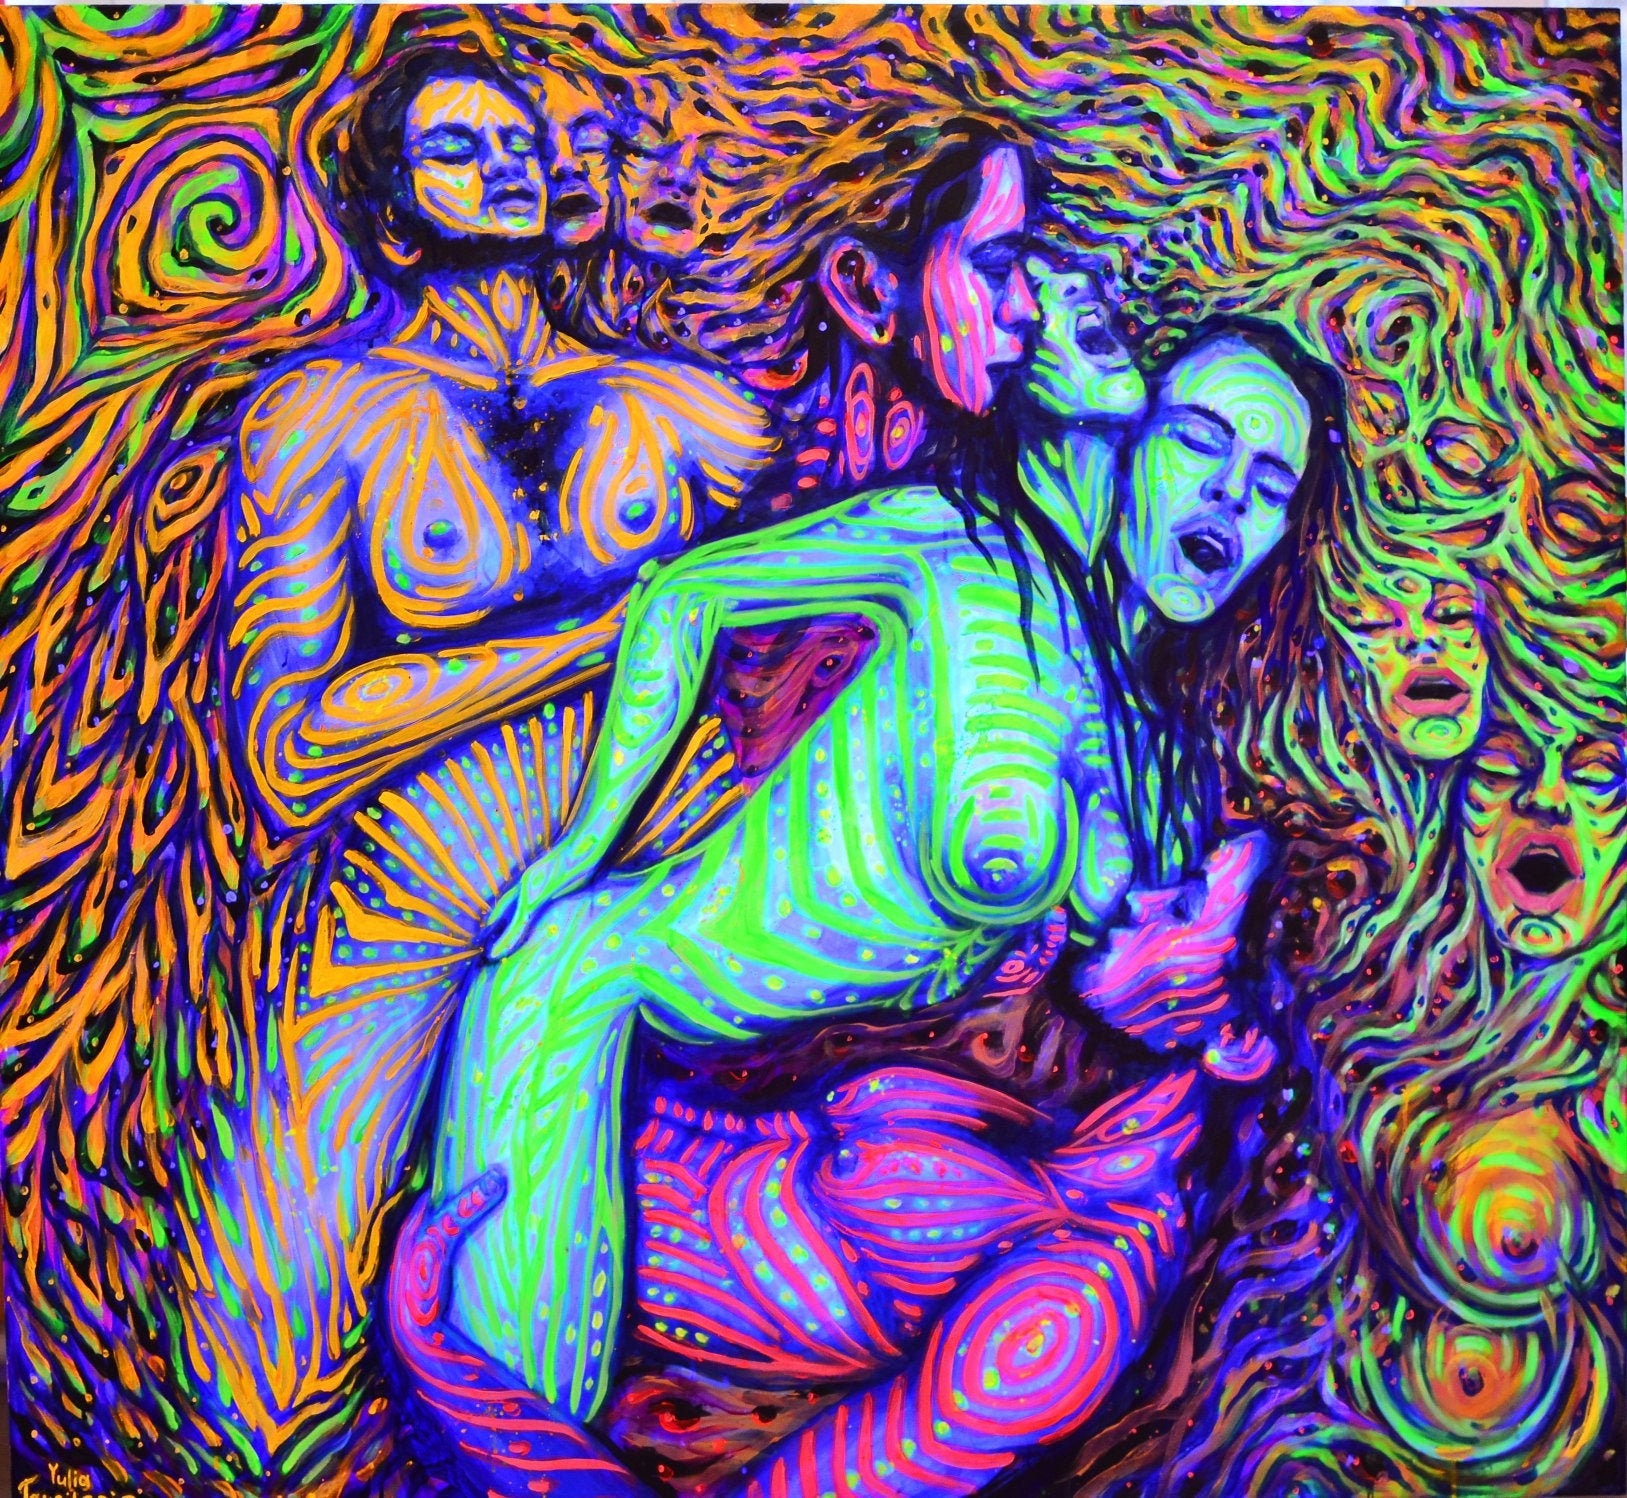 Lesbian orgy art